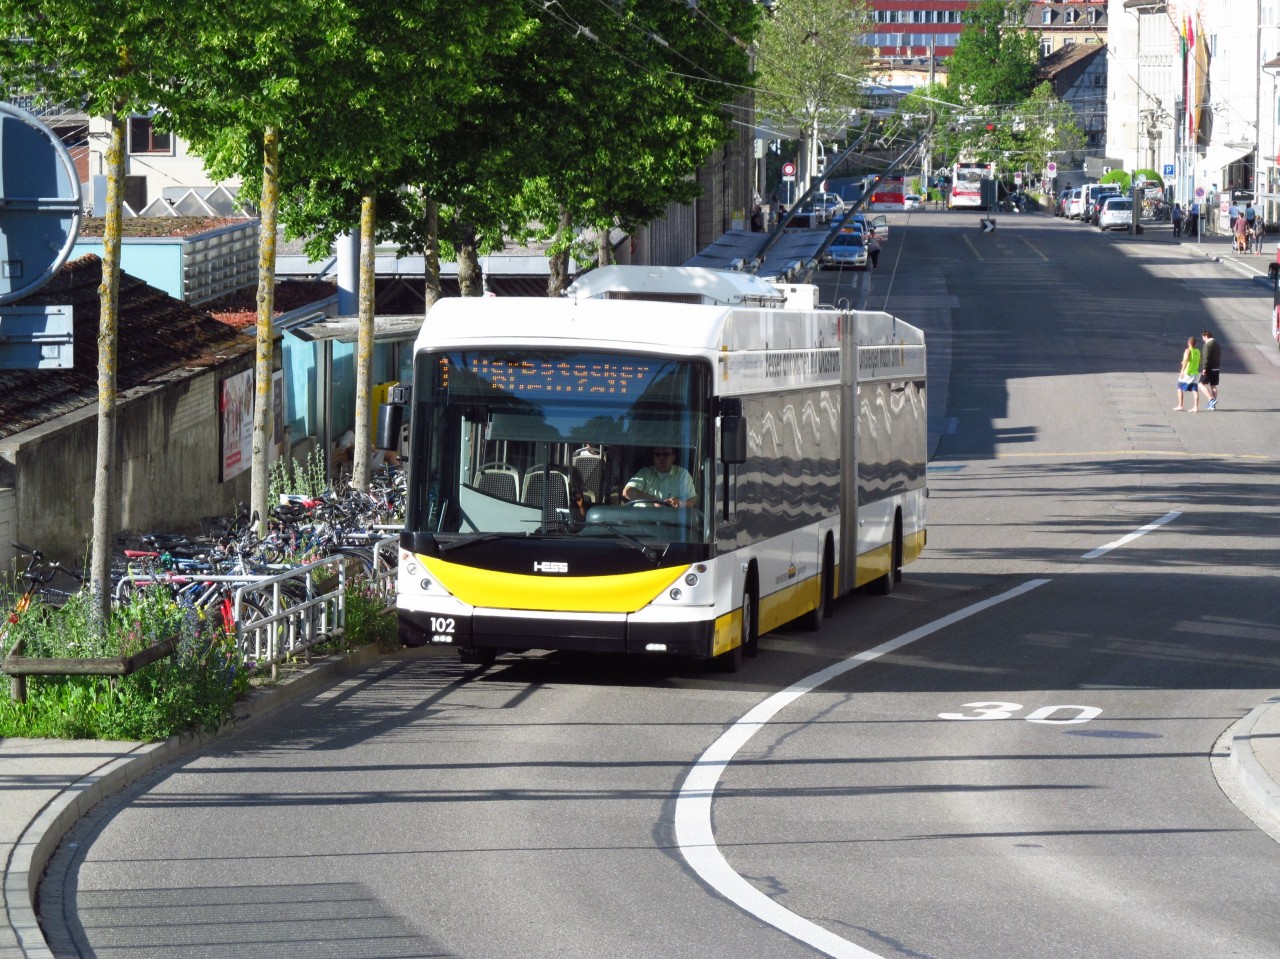 1 ze 7 tamnch trolejbus (kloubov Hess) odjd z pedndraho prostoru v Schaffhausenu (6/2019)